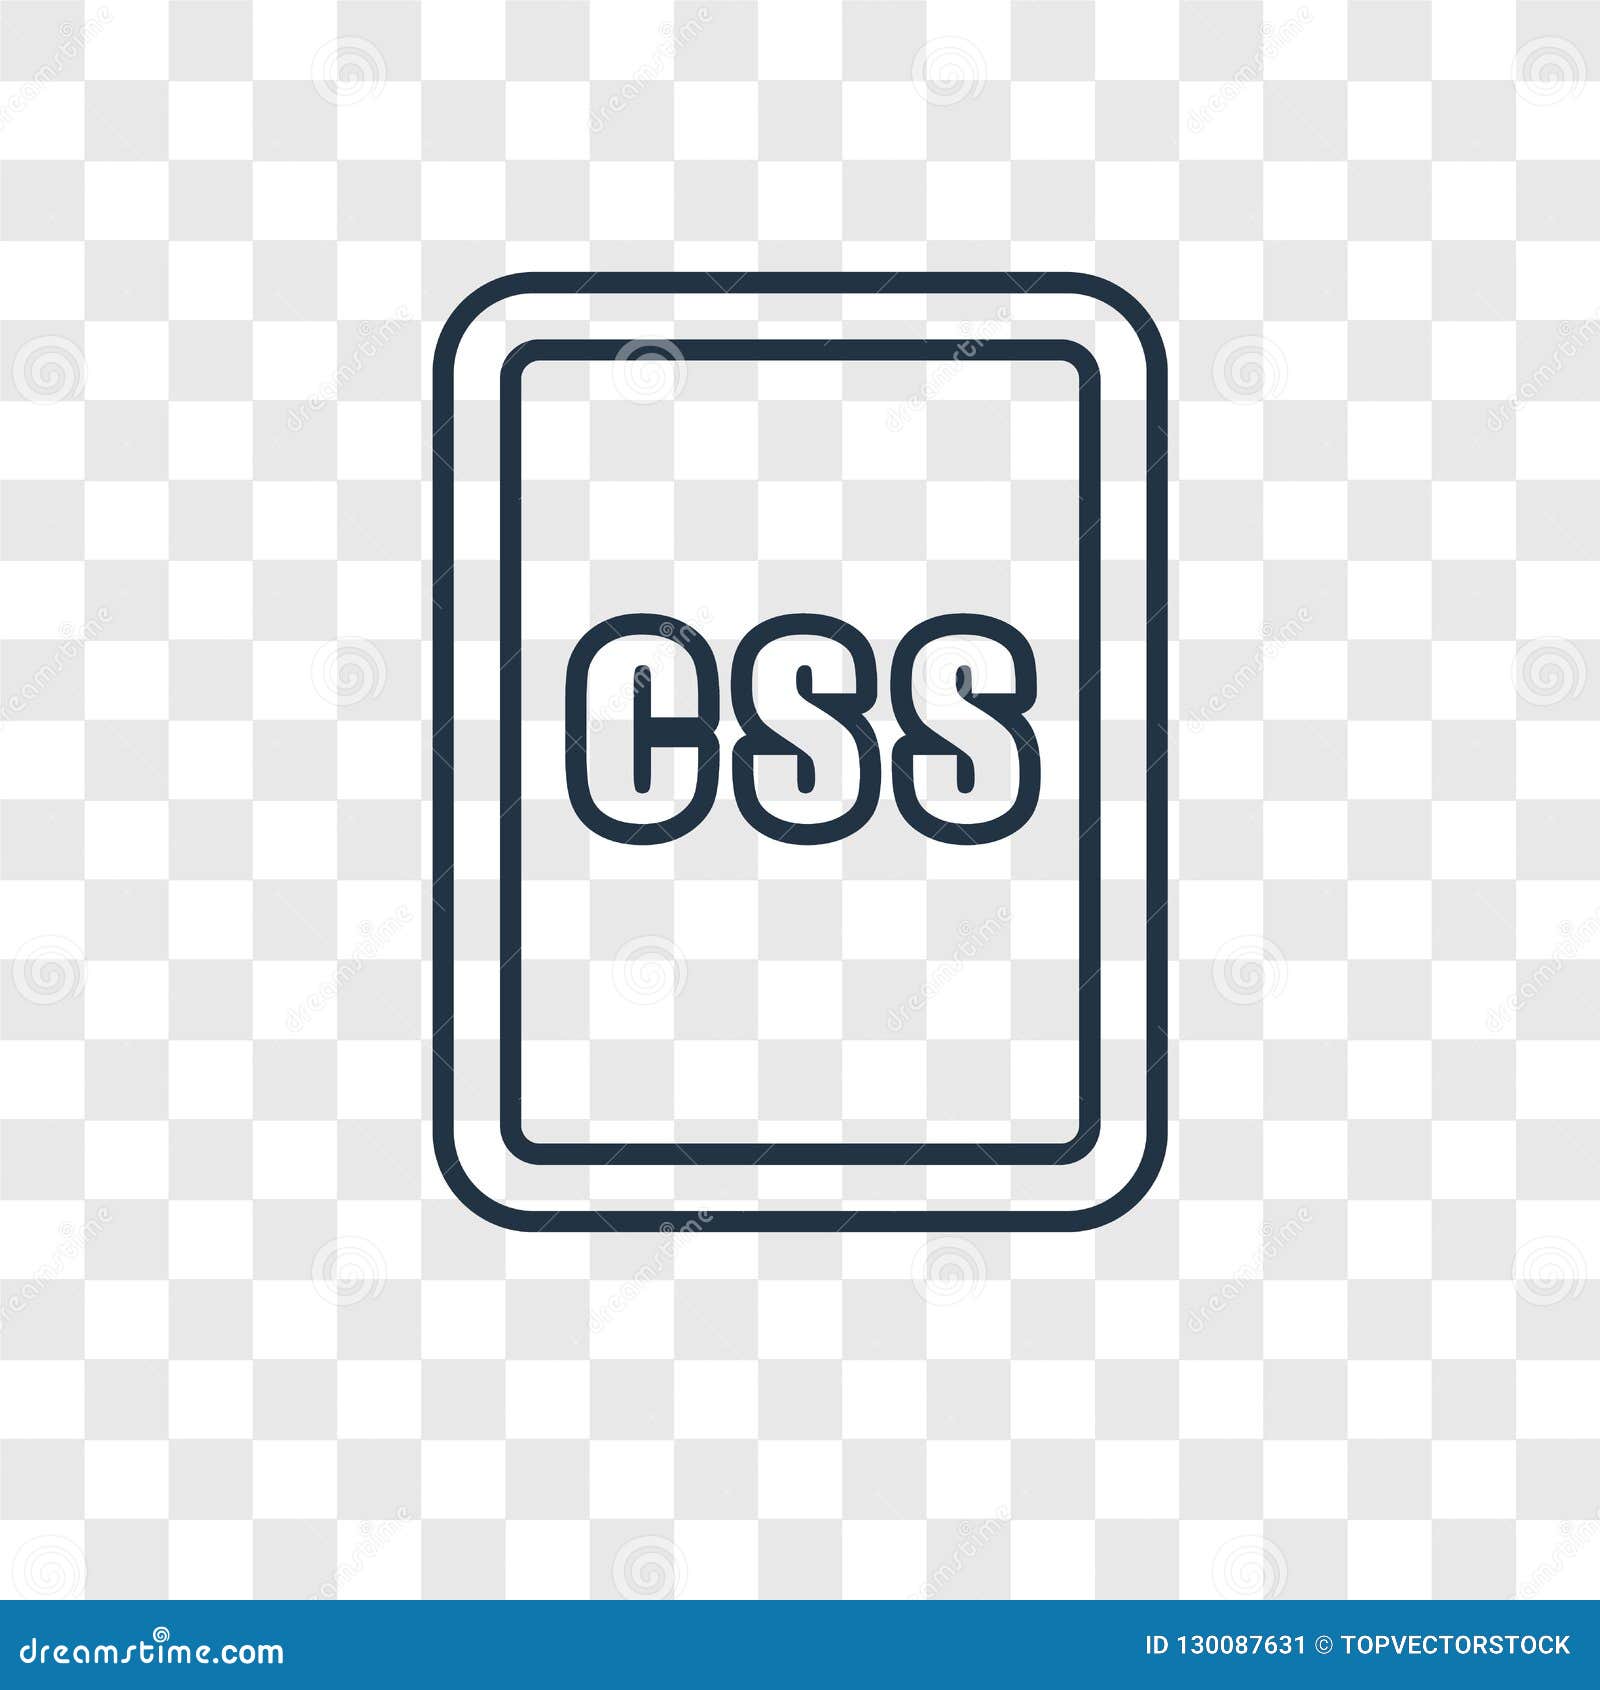 Css Concept Vector Linear Icon: Css là một công nghệ không thể thiếu cho các nhà thiết kế web ngày nay. Với CSS Concept Vector Linear Icon, bạn có thể tối ưu hóa cho trang web của mình với các tính năng mới nhất với thiết kế hiện đại và đơn giản. Thử tìm hiểu thêm về Css Concept Vector Linear Icon và trang trí trang web của bạn.